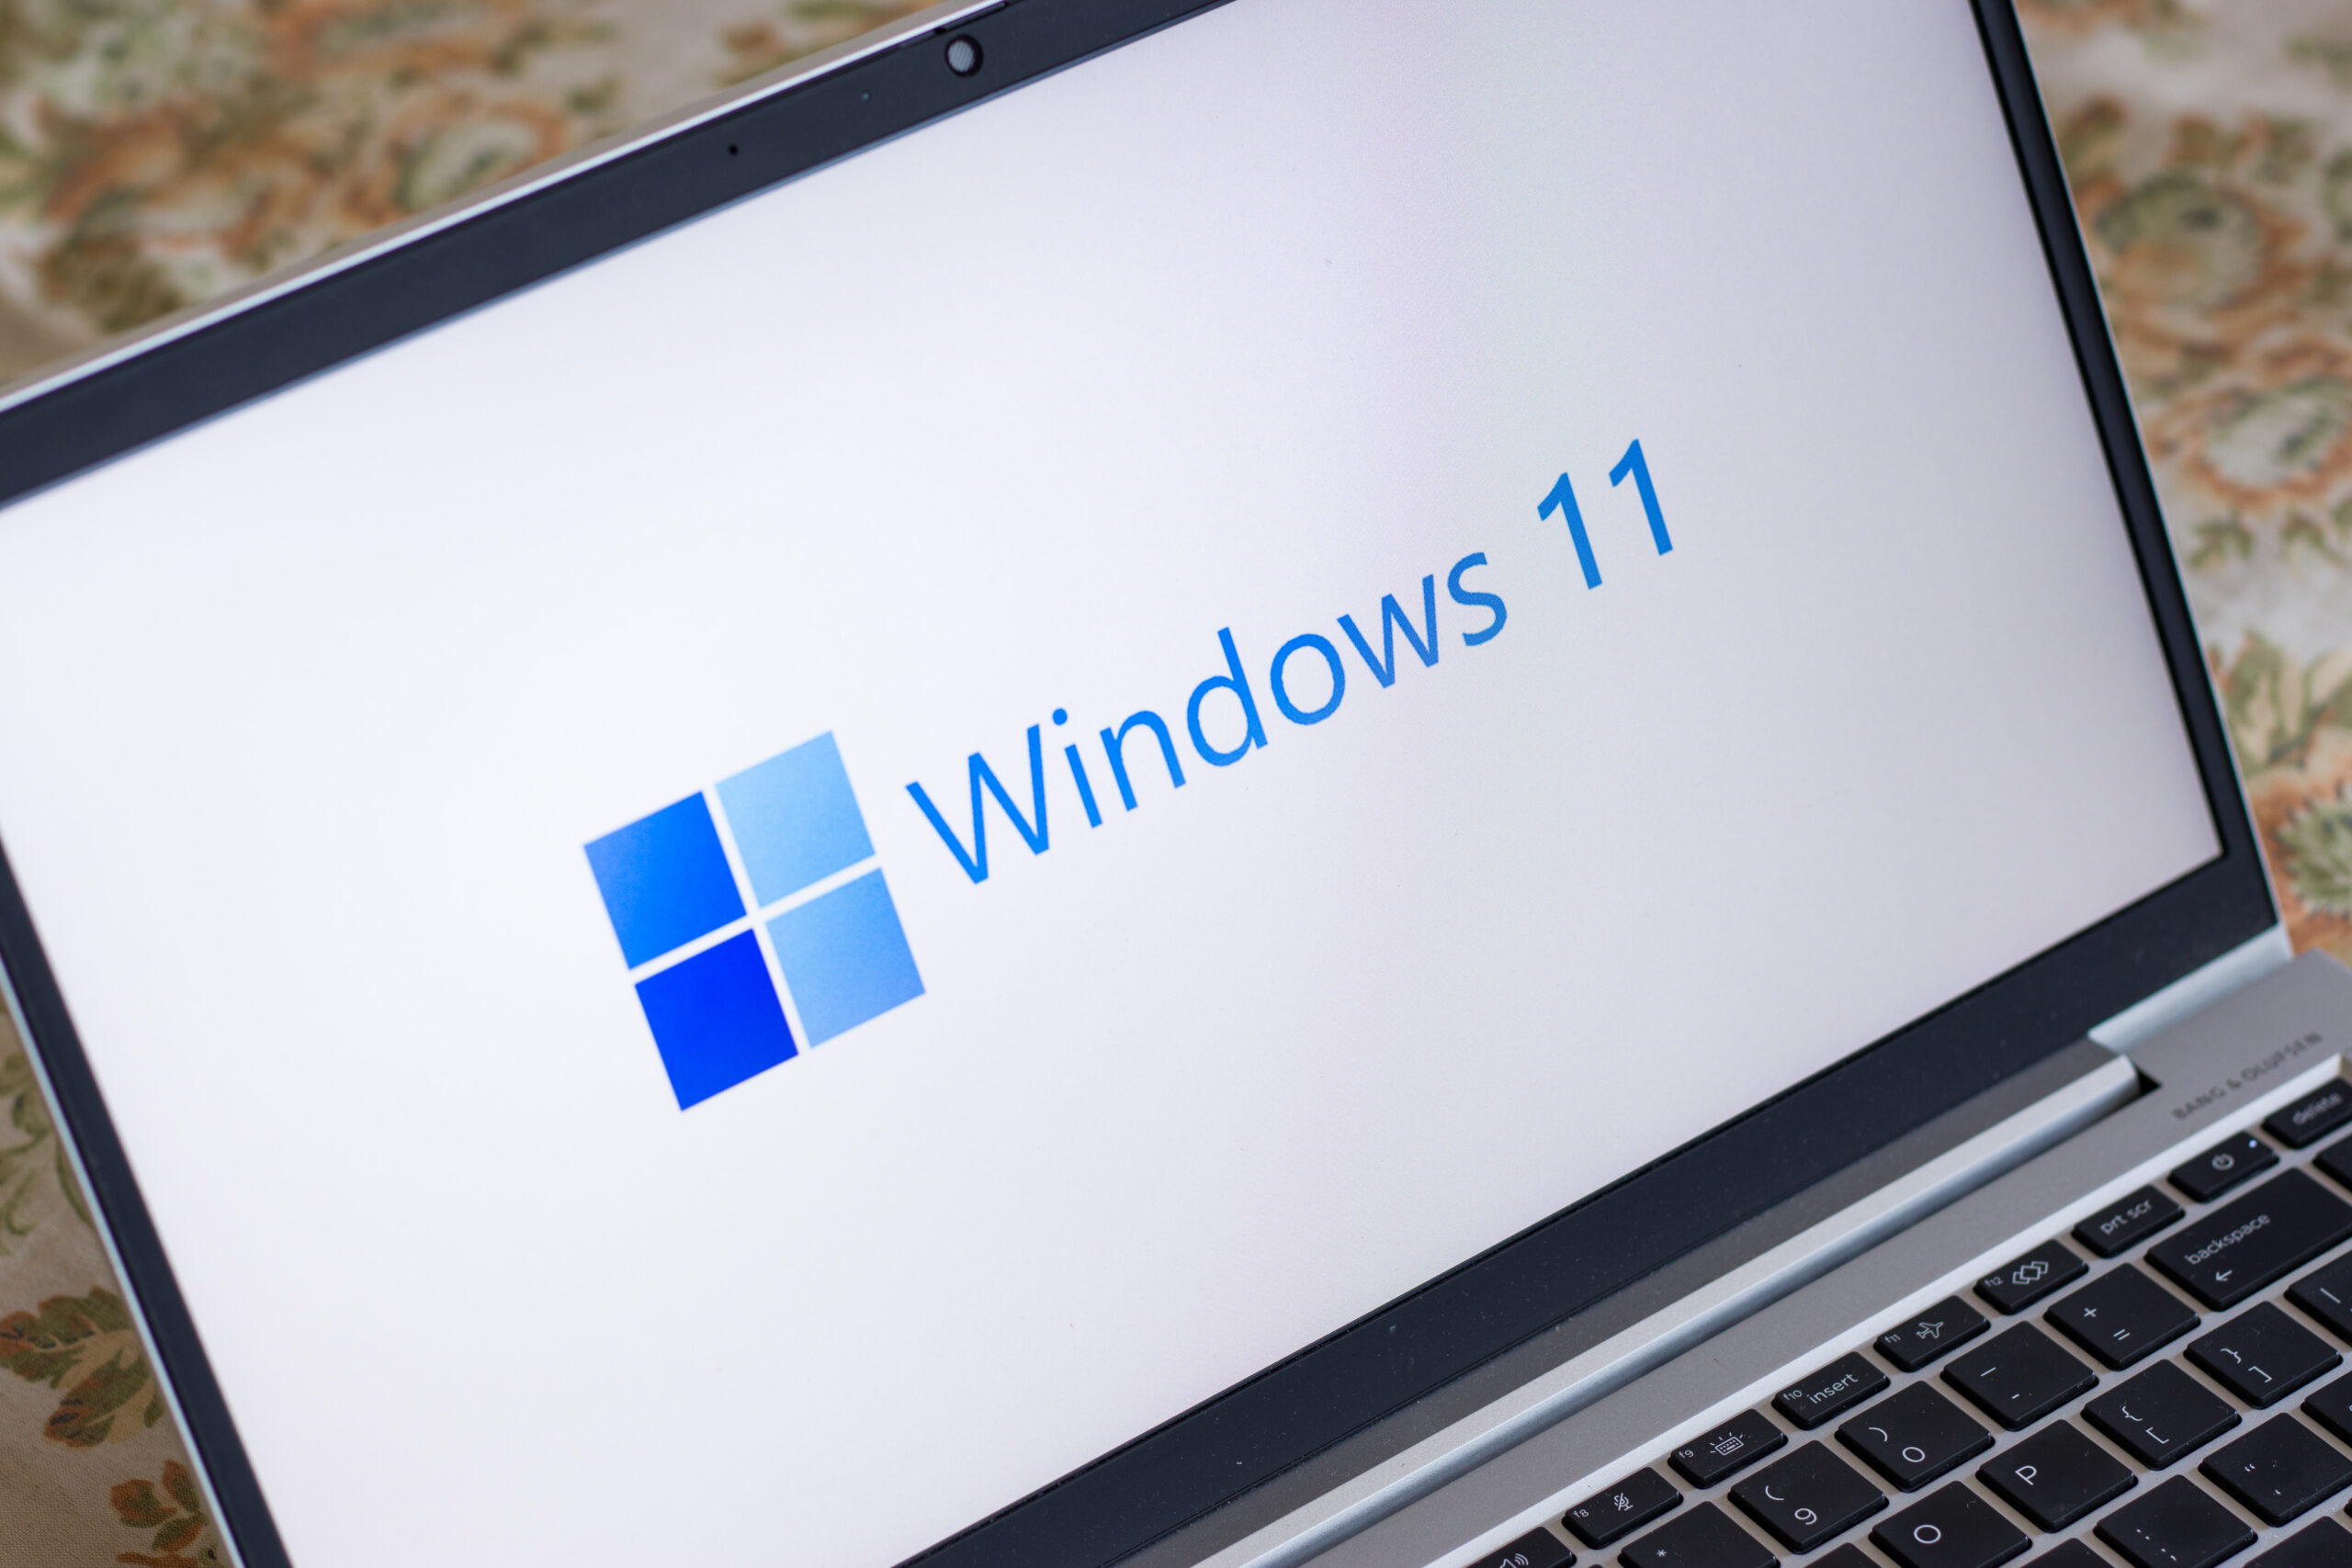 Windows 11 Datenschutz